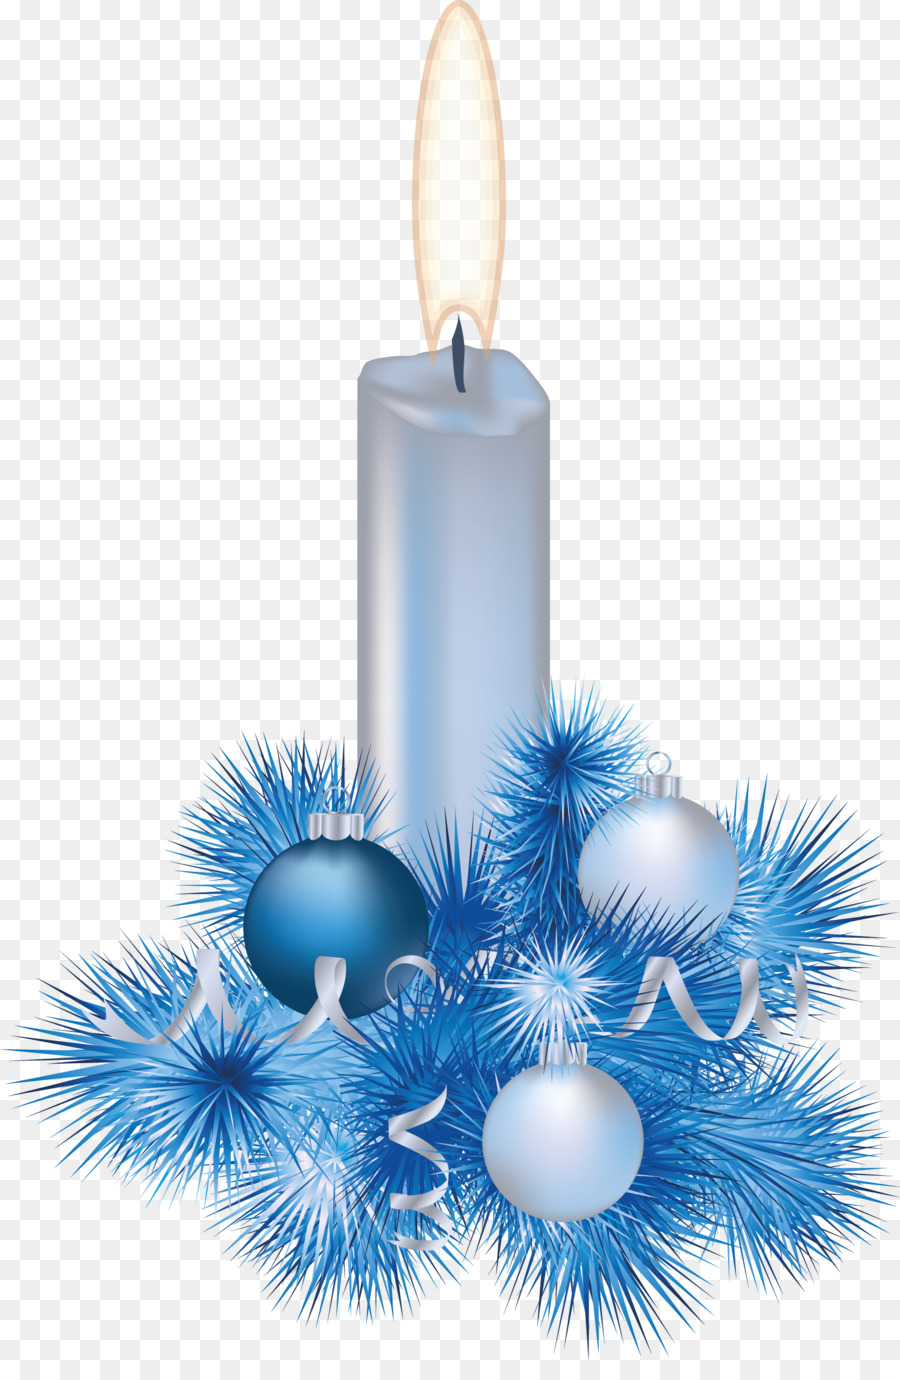 Santa Claus Christmas ornament, Kerze Clip art - Eiszapfen